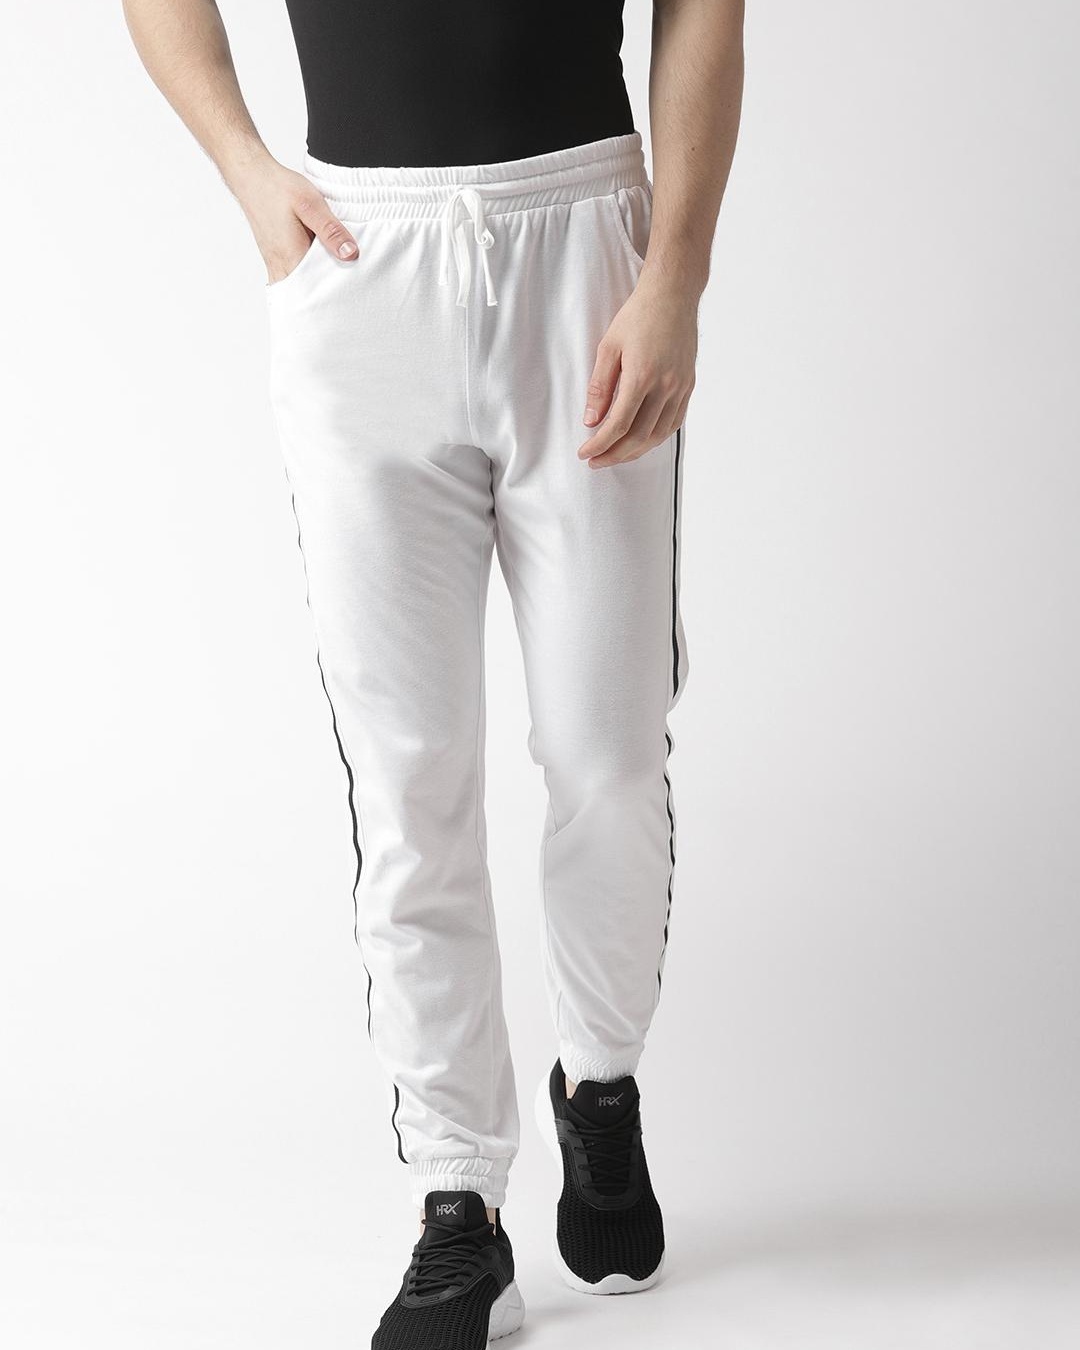 Buy Men's White Side Striped Joggers for Men White Online at Bewakoof